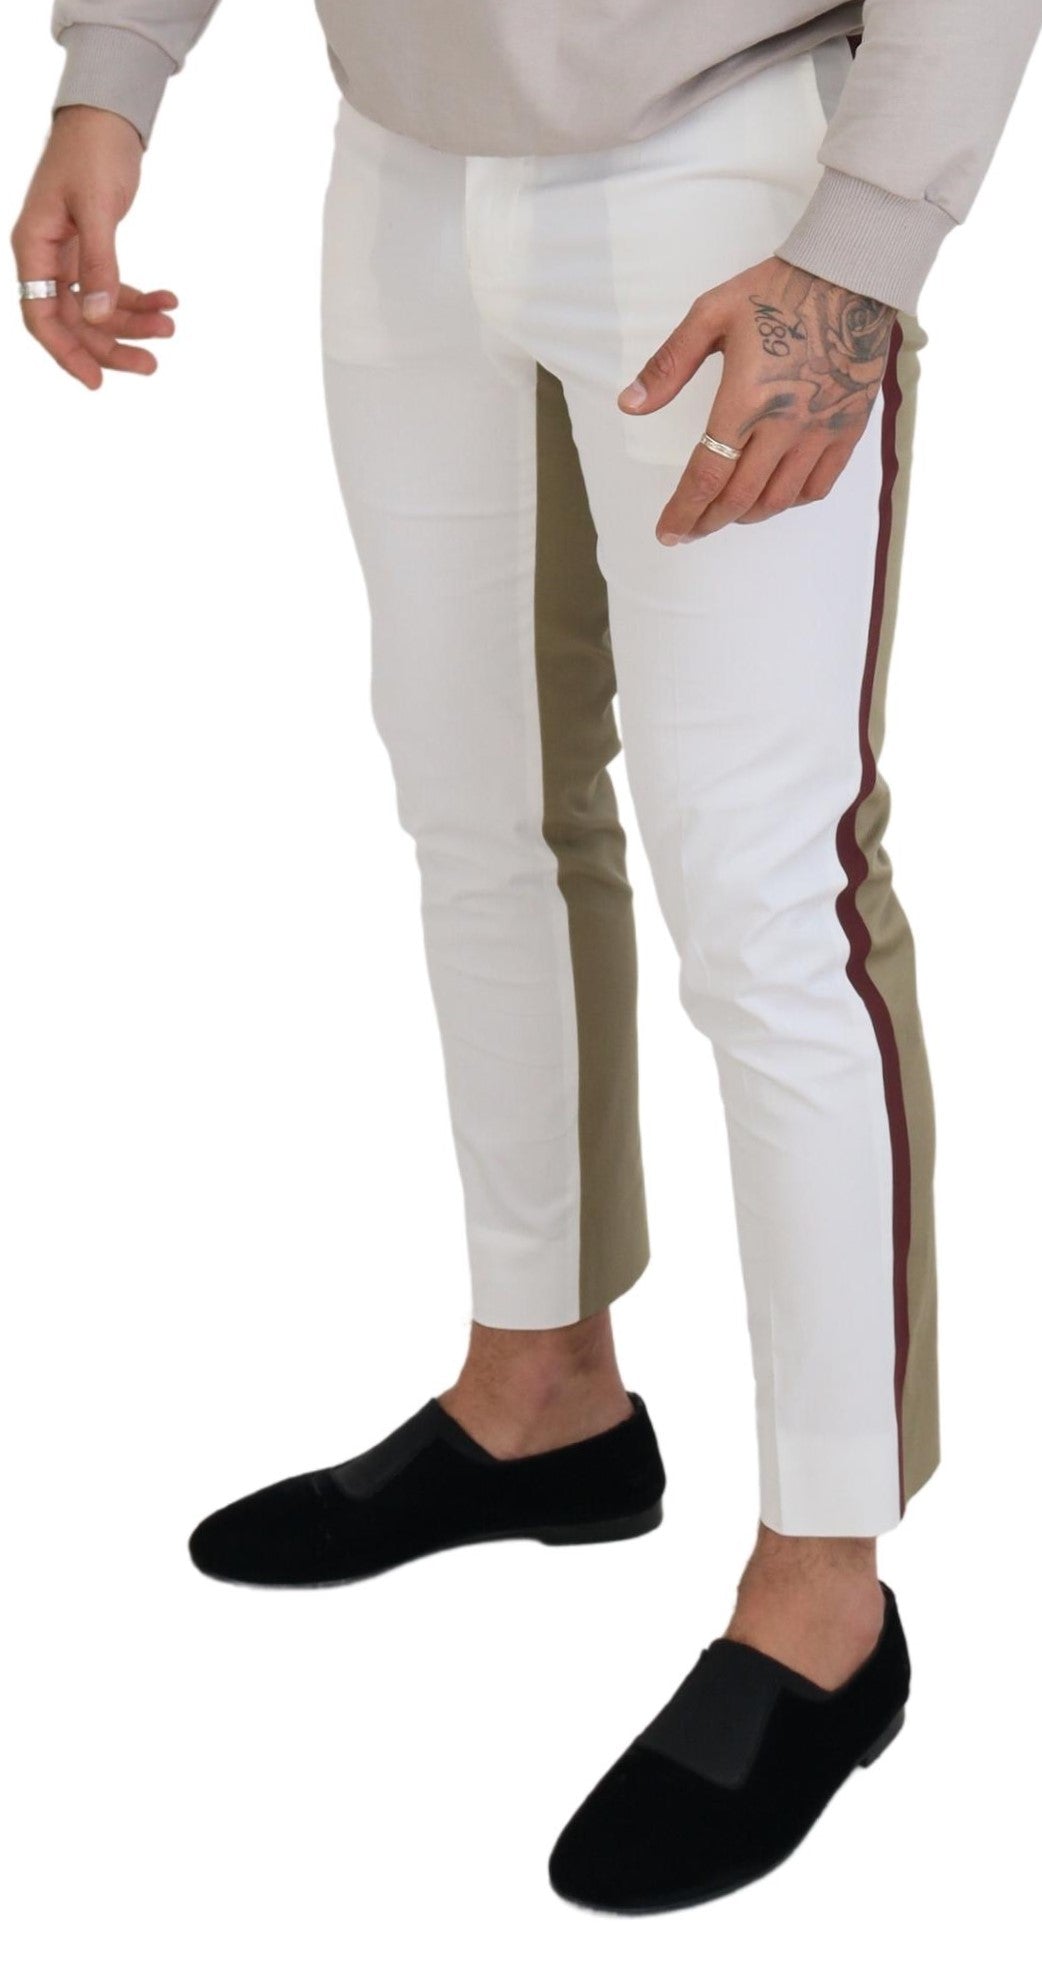 Dolce & Gabbana Two-Tone White & Brown Chic Cotton Pants